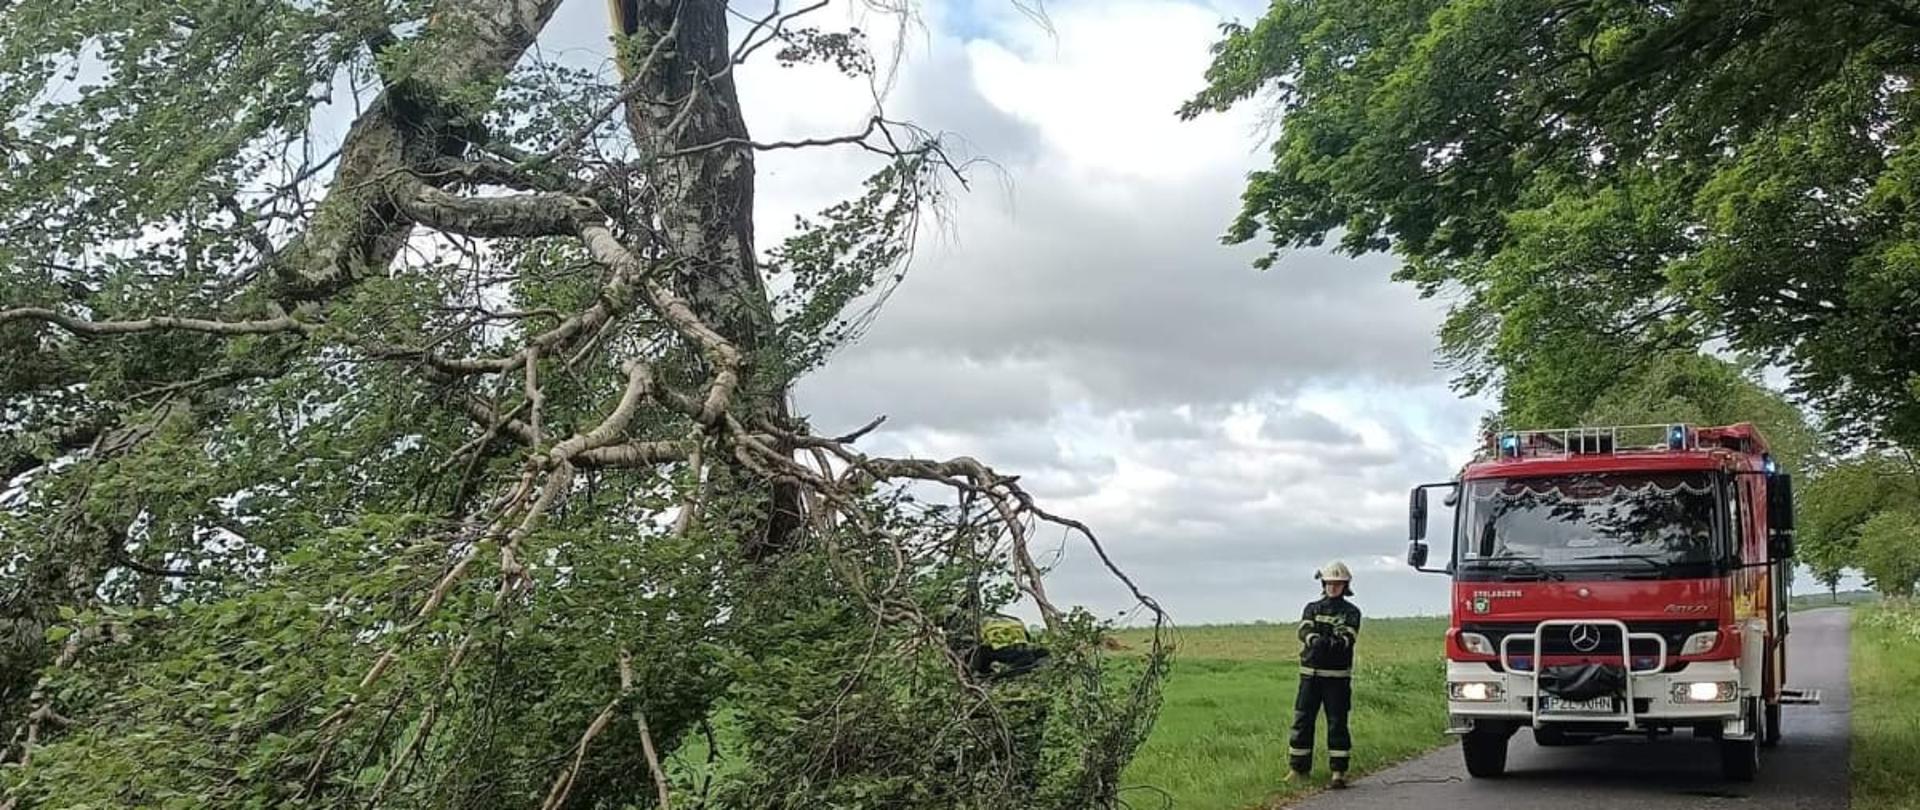 Na zdjęciu złamane w połowie drzewo w oodali widać wóz strażacki